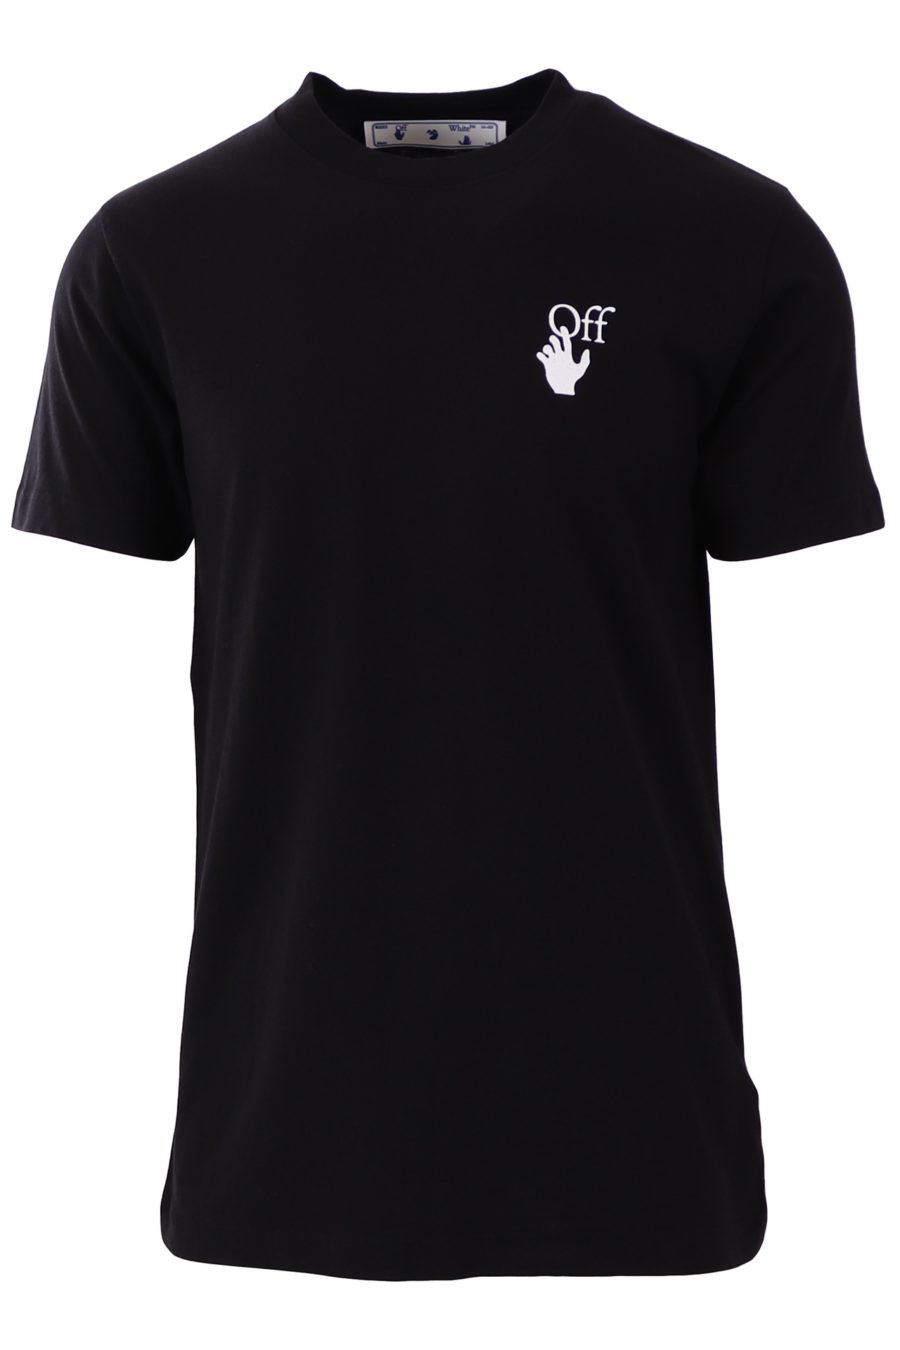 T-shirt Off-White noir imprimé croix multicolore - 23525752e2726a293b01801837d6c86a2706934b